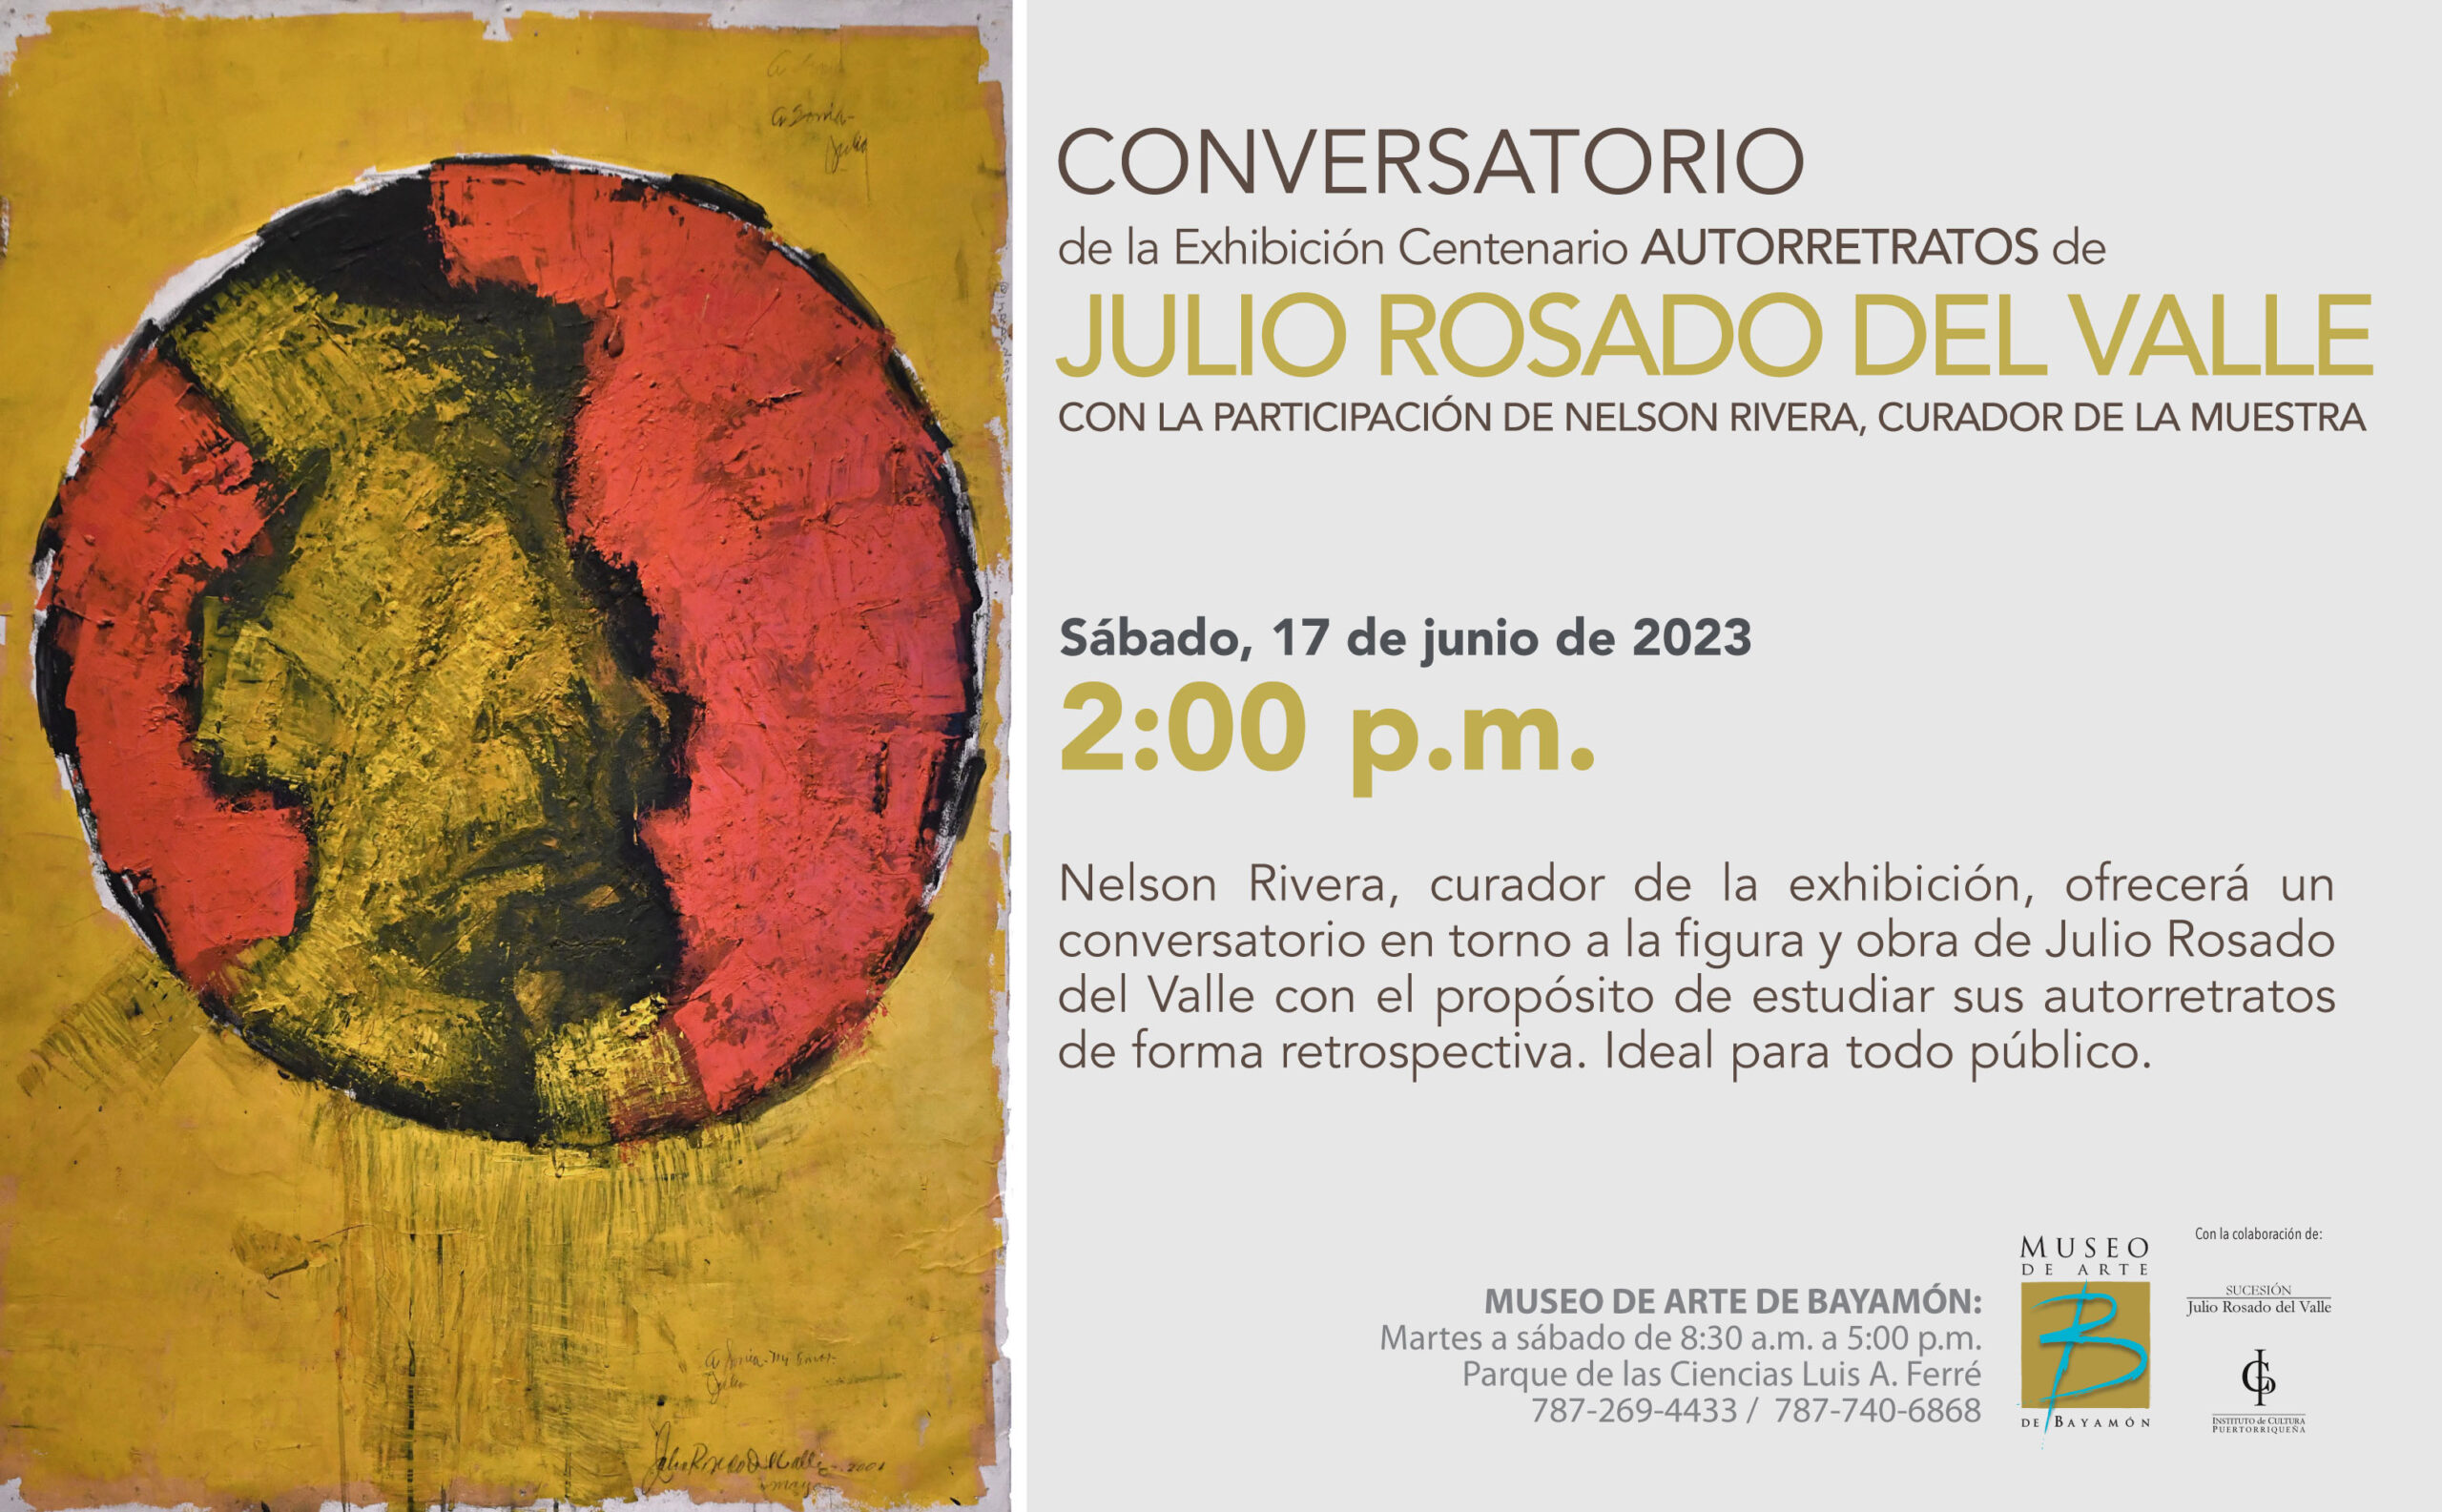 Conversatorio de Julio Rosado del Valle